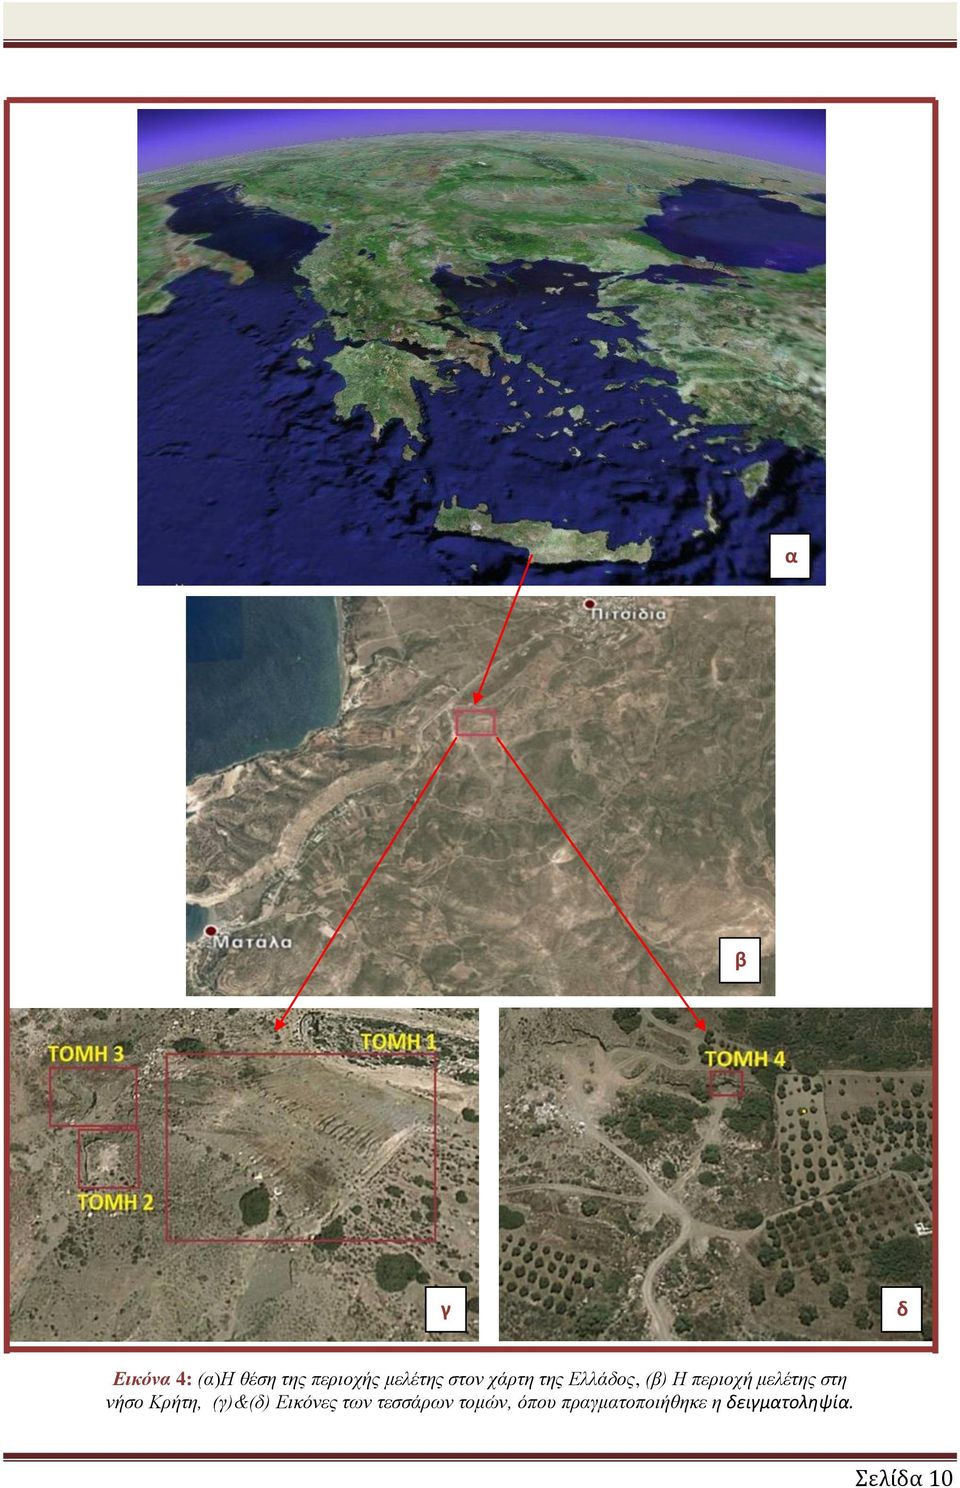 στη νήσο Κρήτη, (γ)&(δ) Εικόνες των τεσσάρων